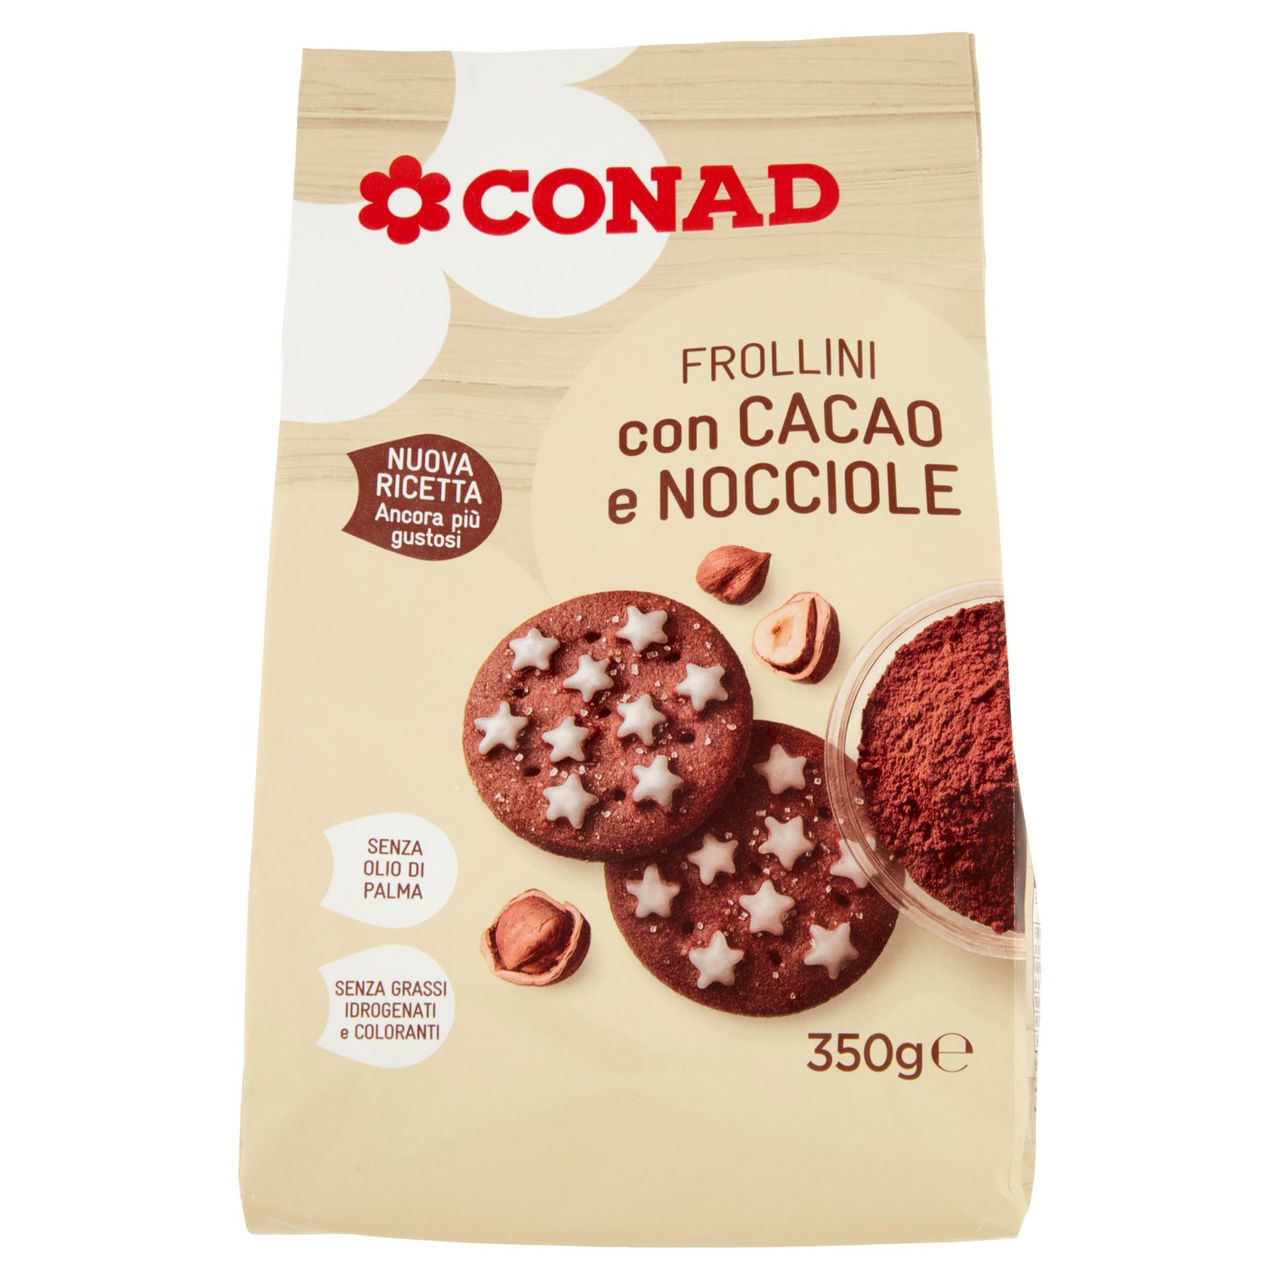 Frollini con Cacao e Nocciole 350 g Conad online